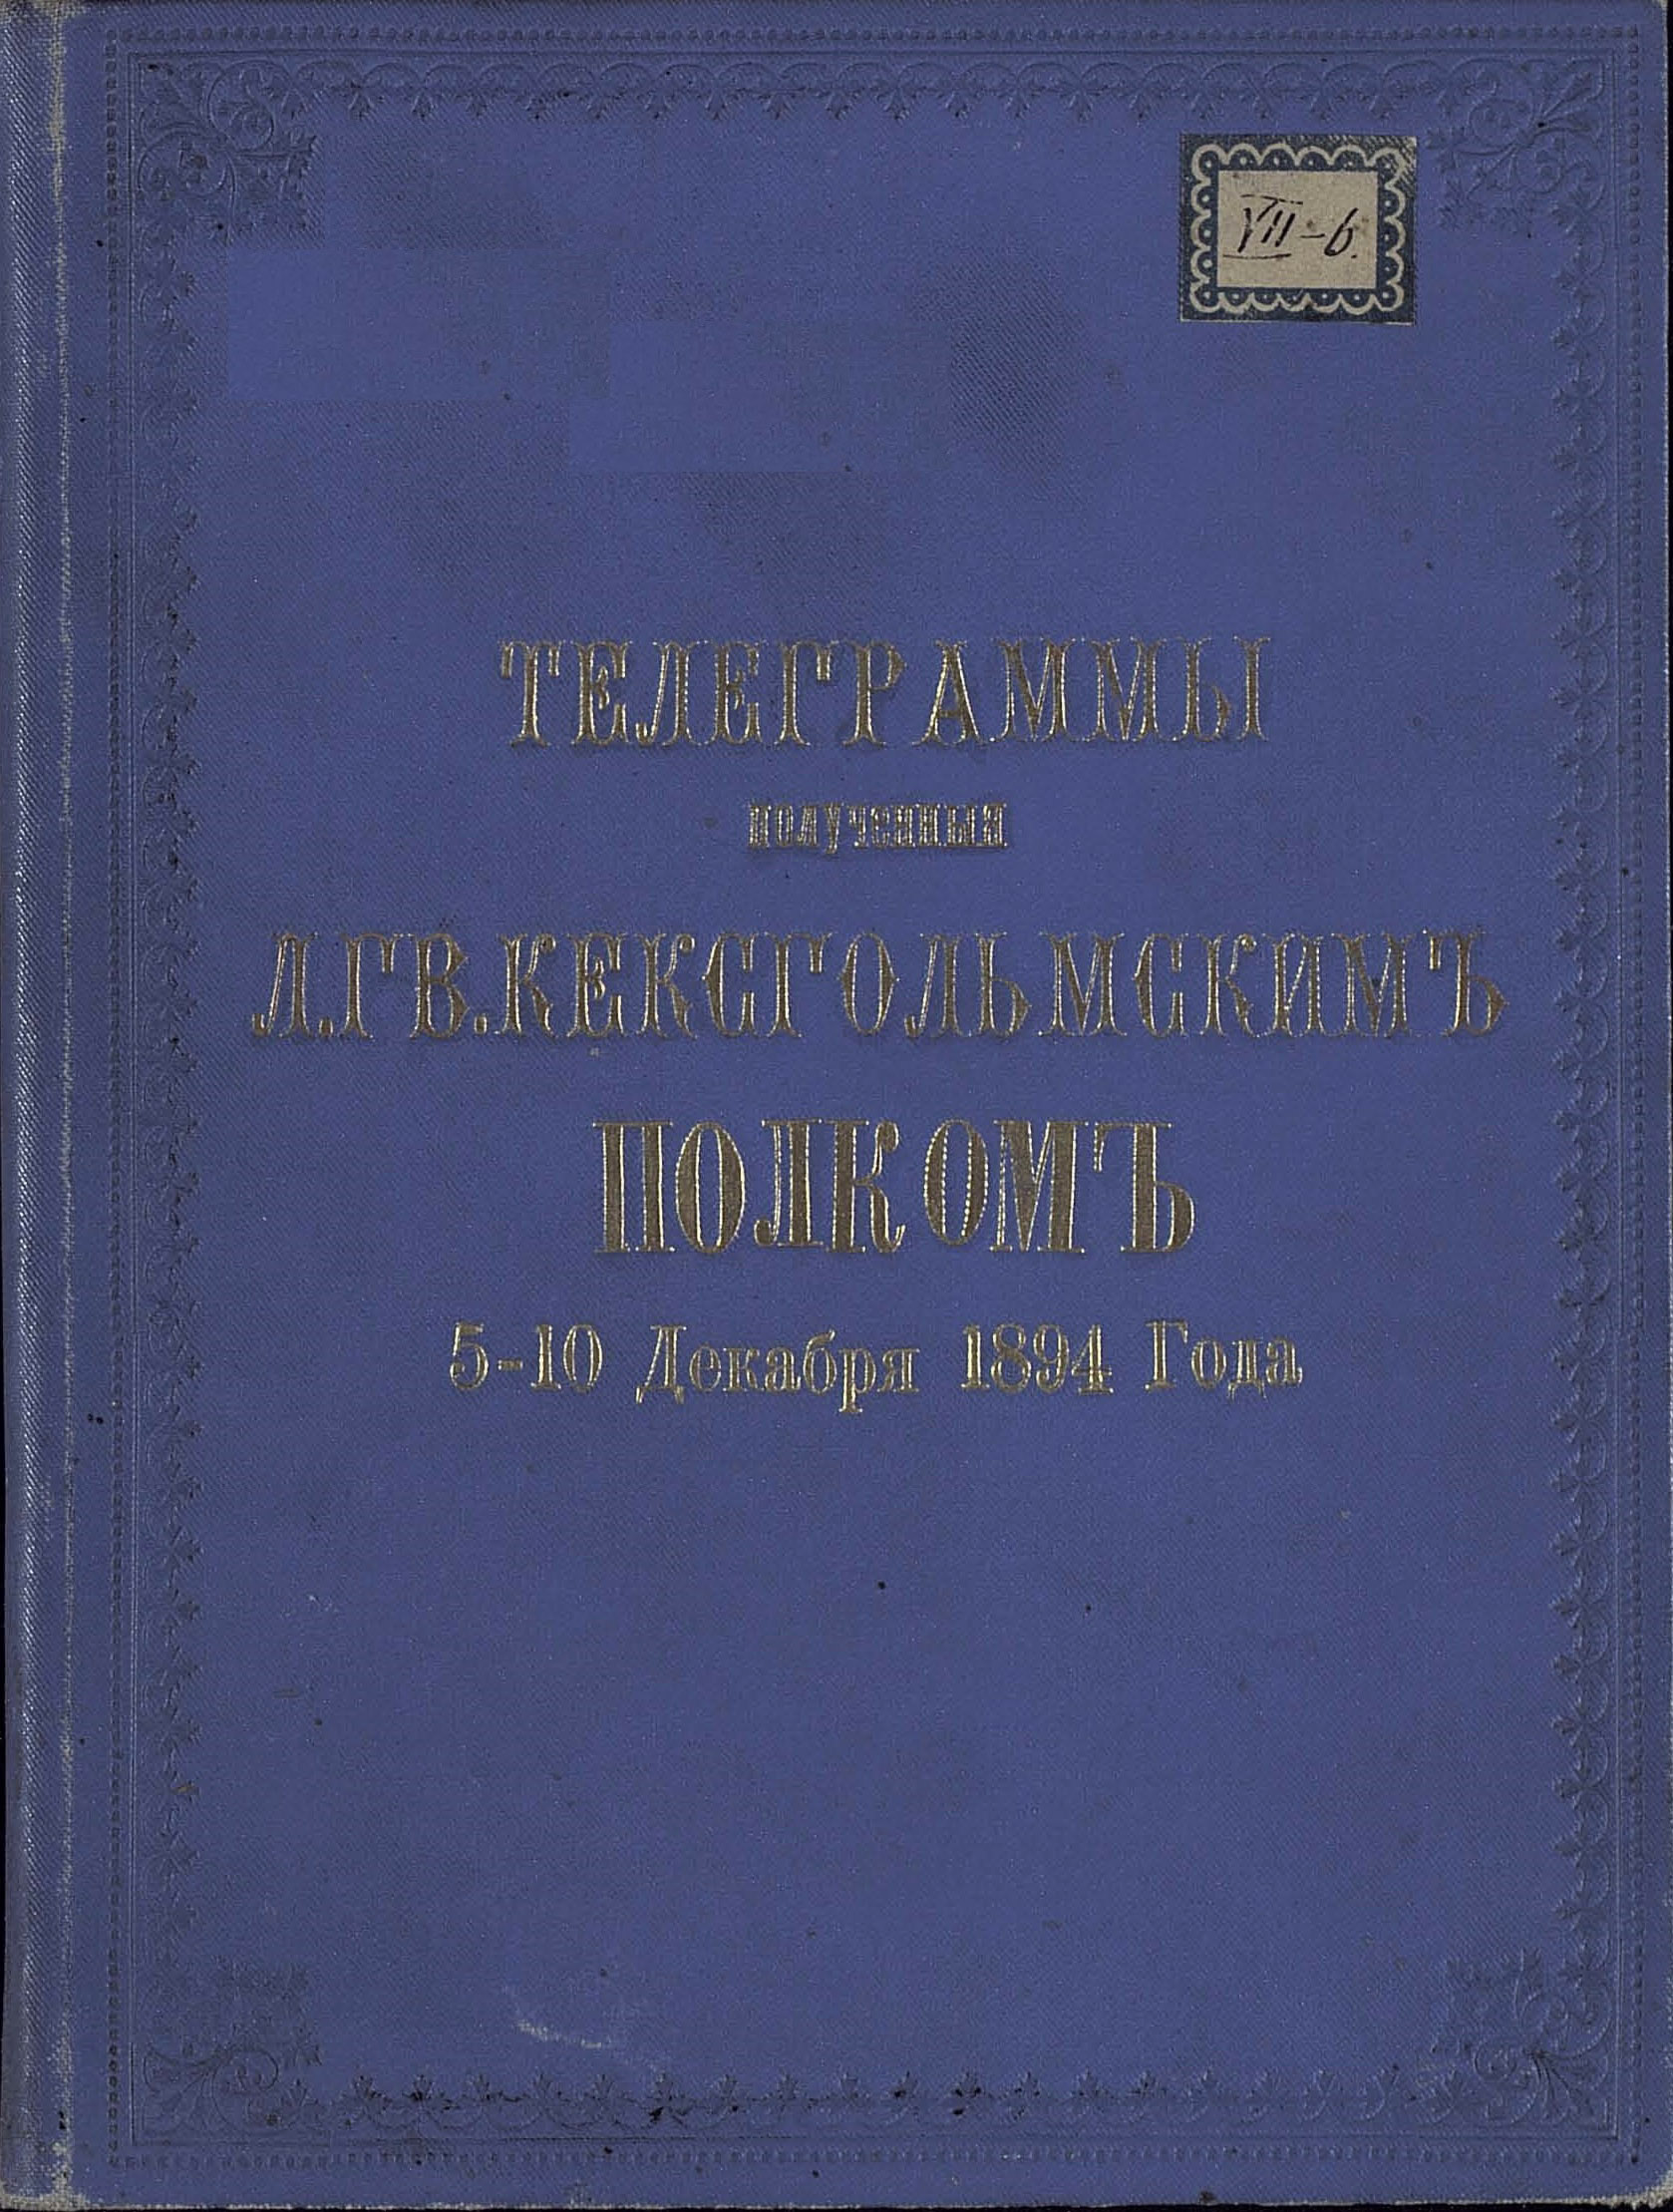 Телеграммы, полученные лейб-гвардии Кексгольмским Императора Австрийского полком 5–10 декабря 1894 года. Варшава, 1895 г. Переплет.